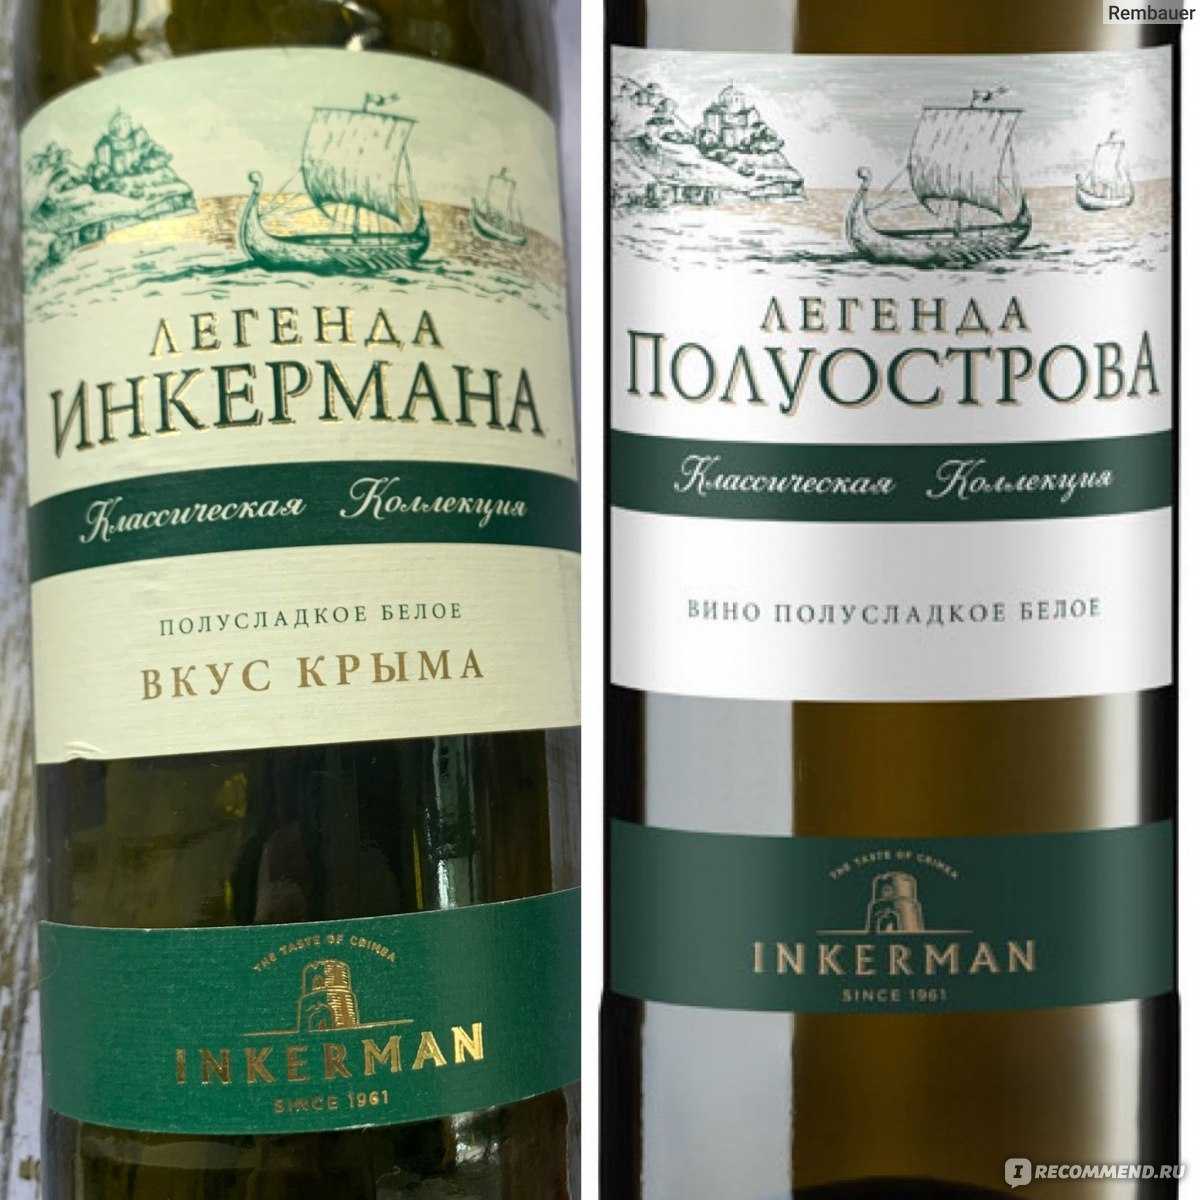 Лучшие вина россии – рейтинг самых популярных и качественных марок